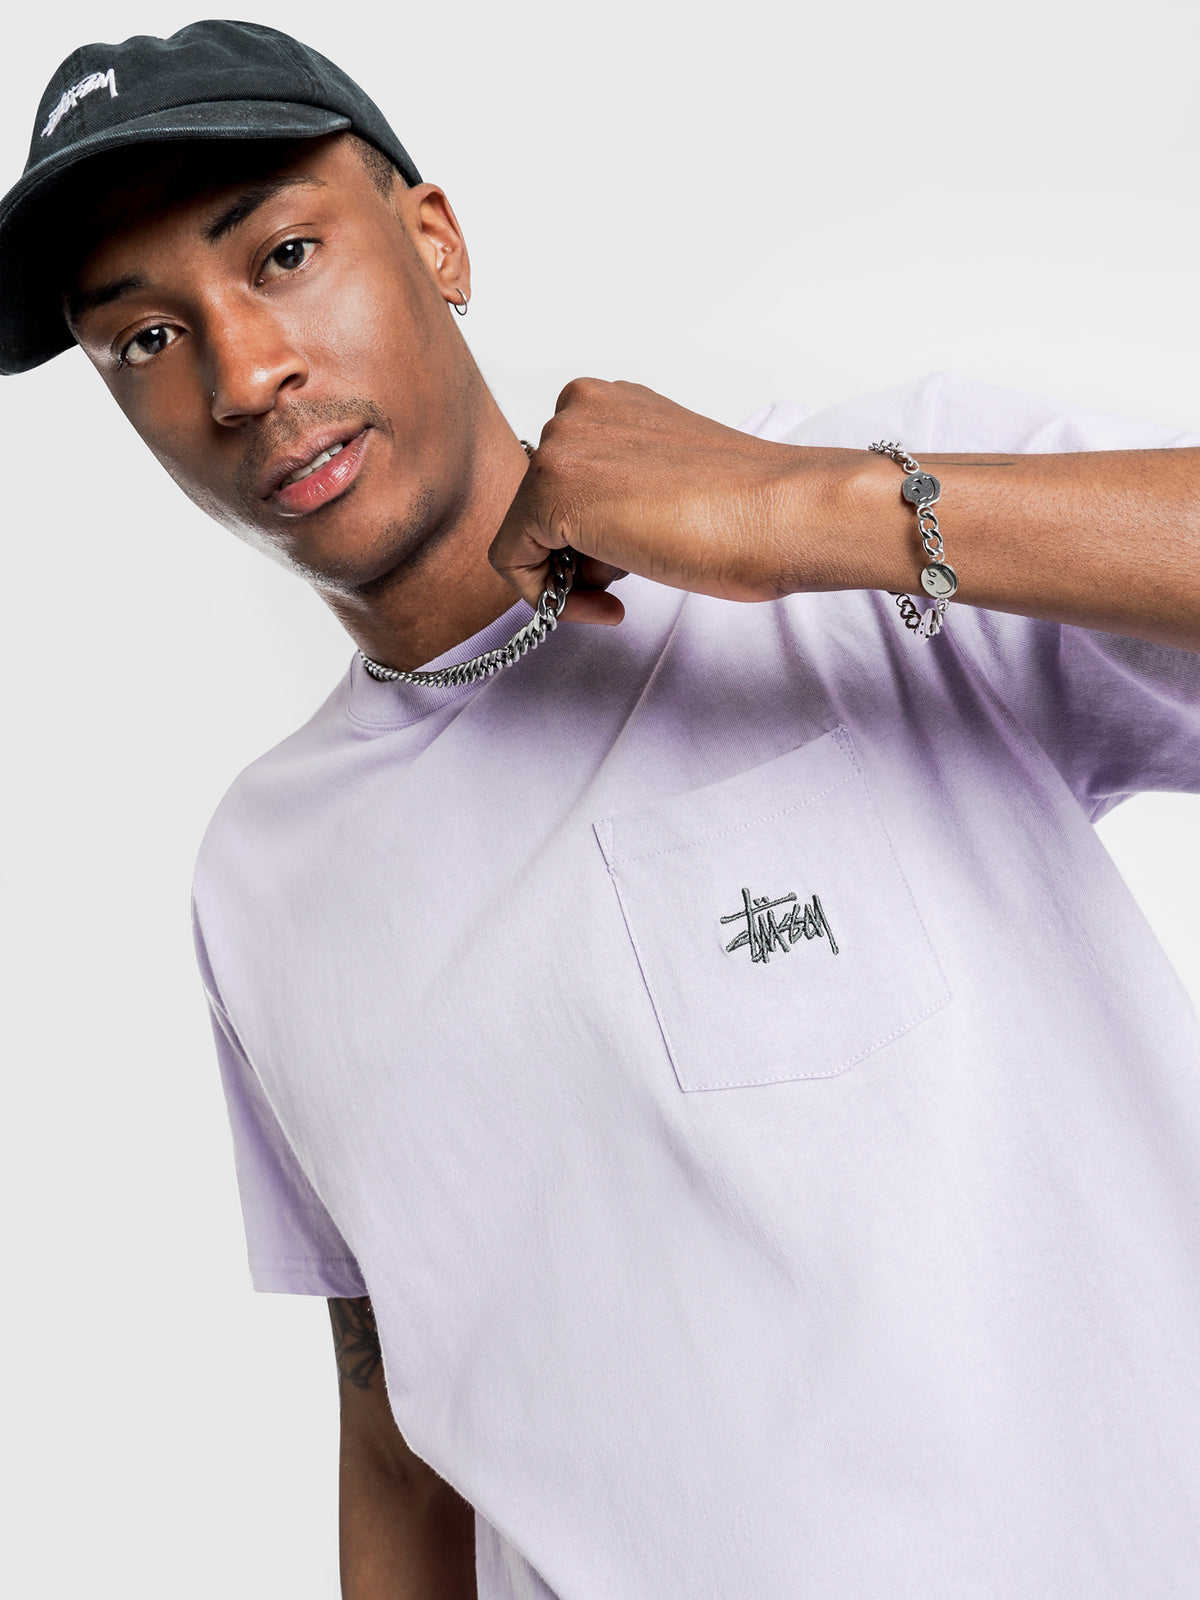 Graffiti Pocket T-Shirt in Lilac